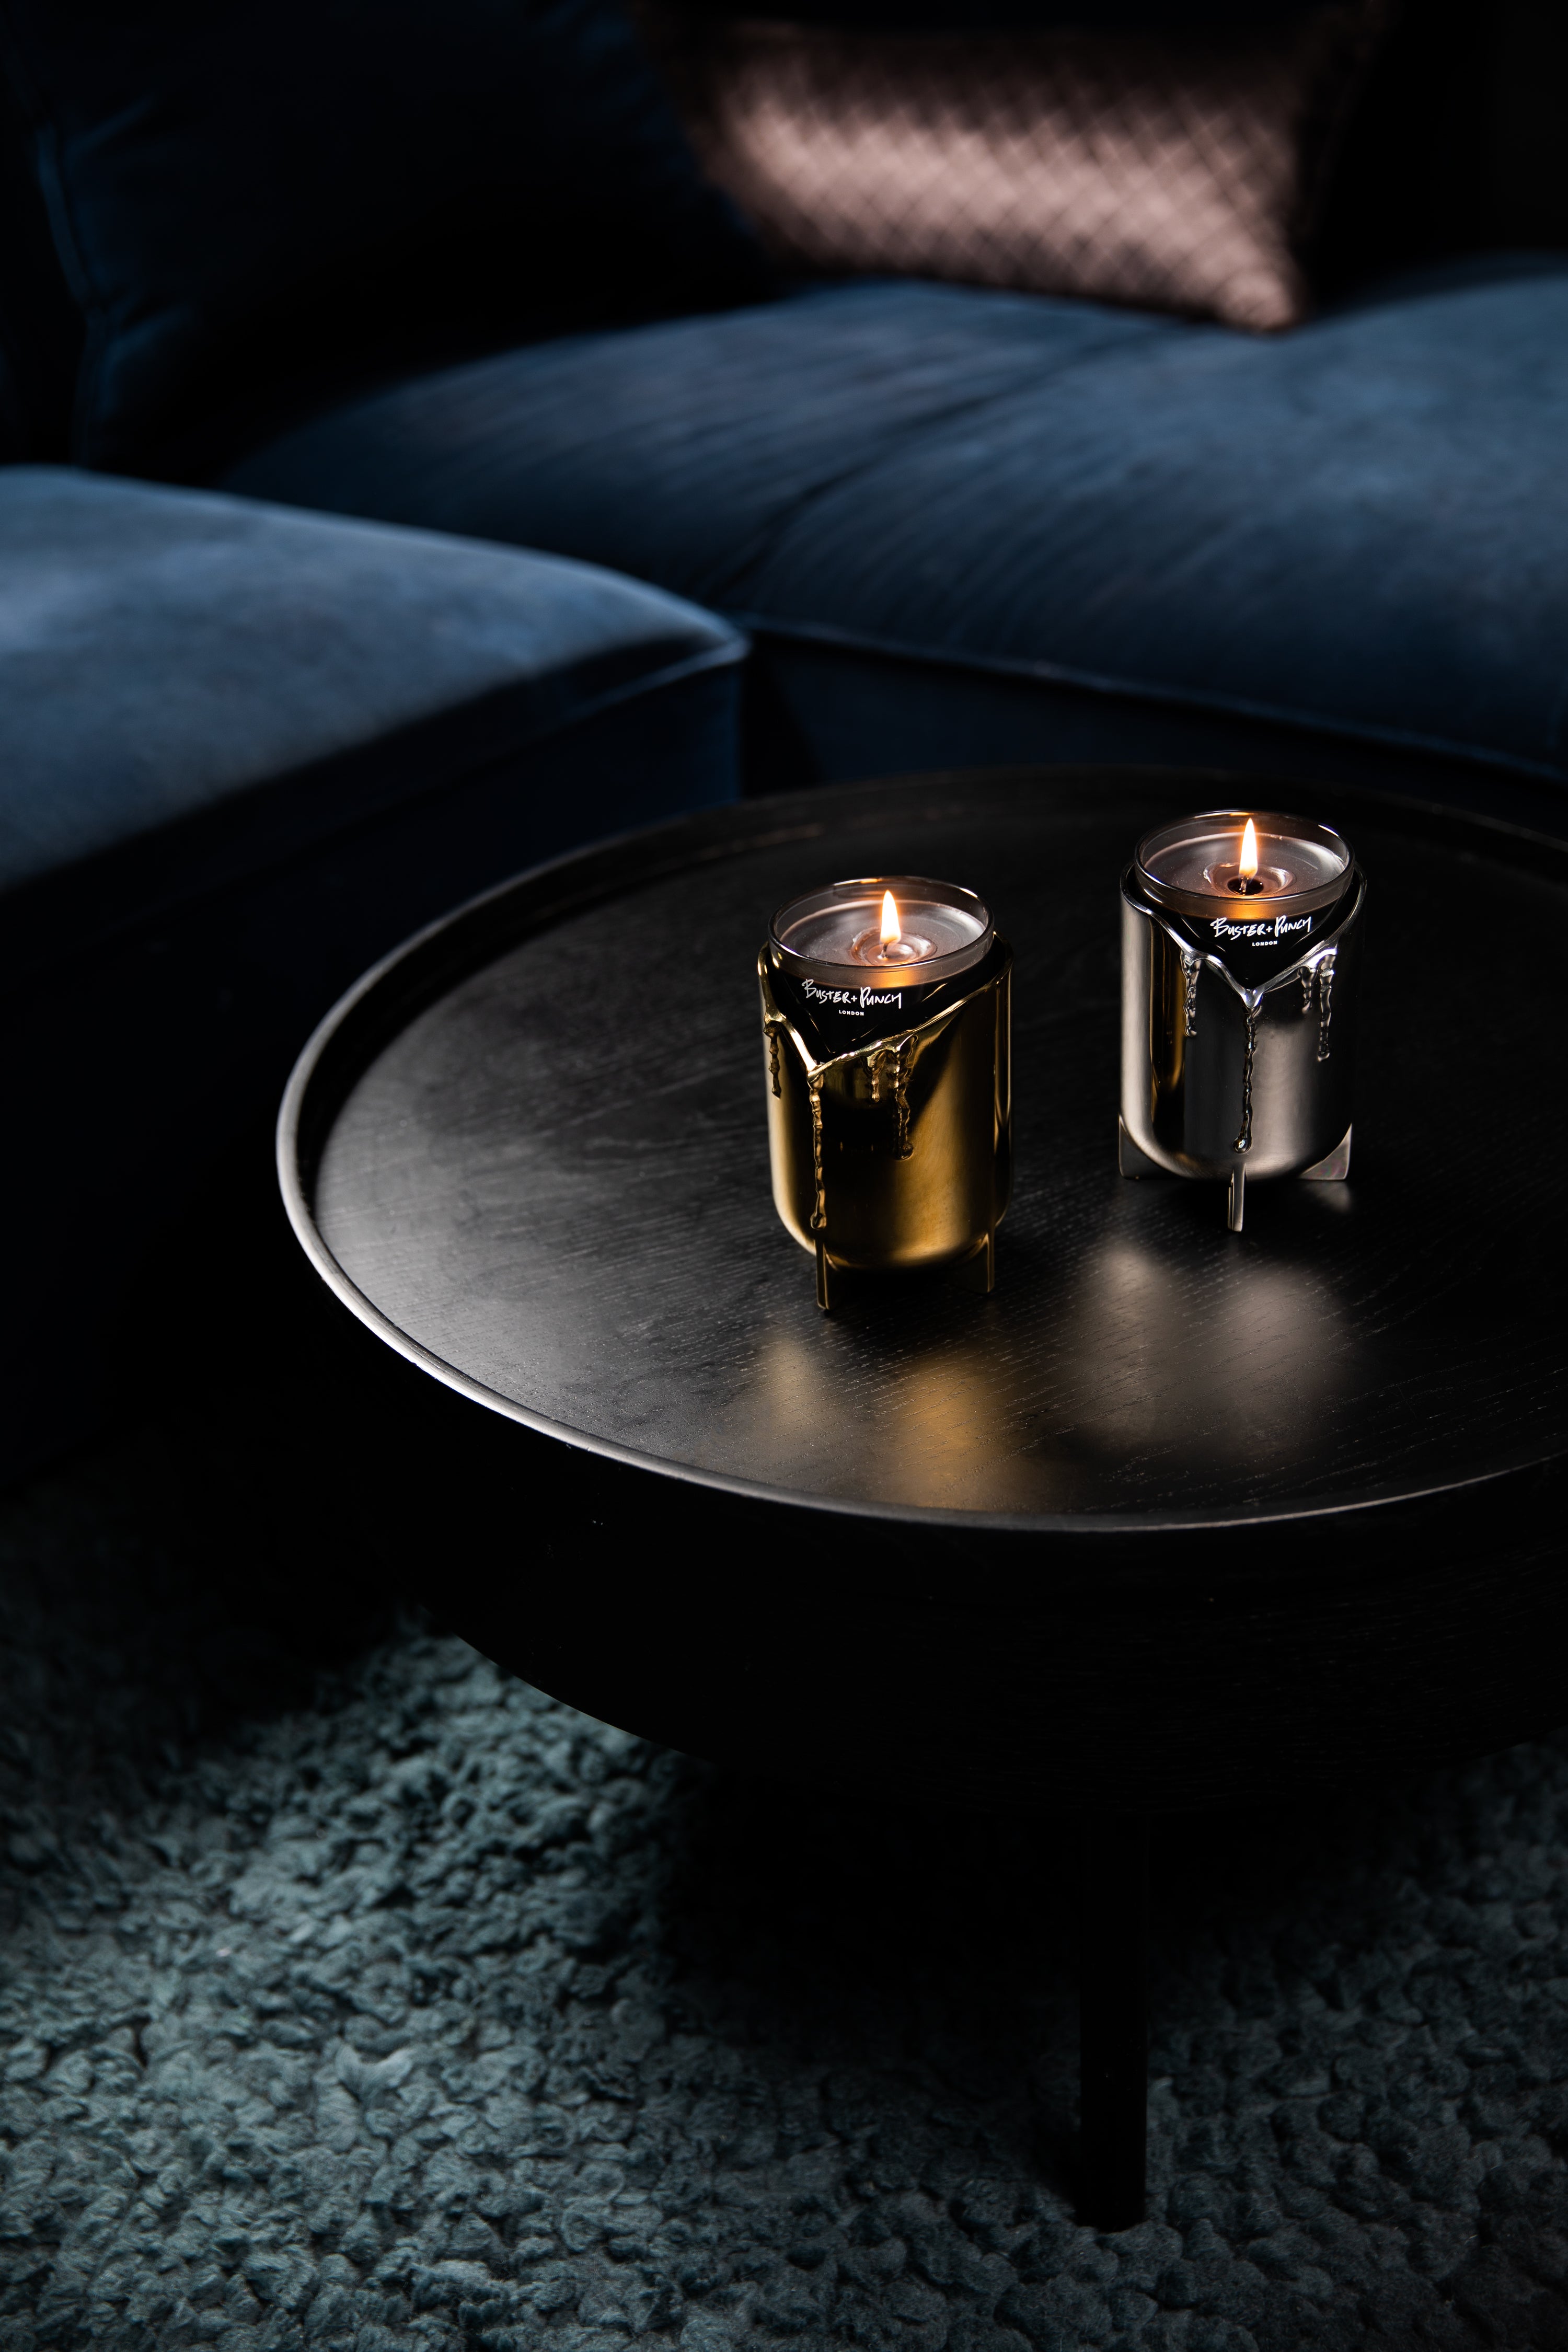 2 lysestager i stål og messing med duftlys i glas, på sort sofabord